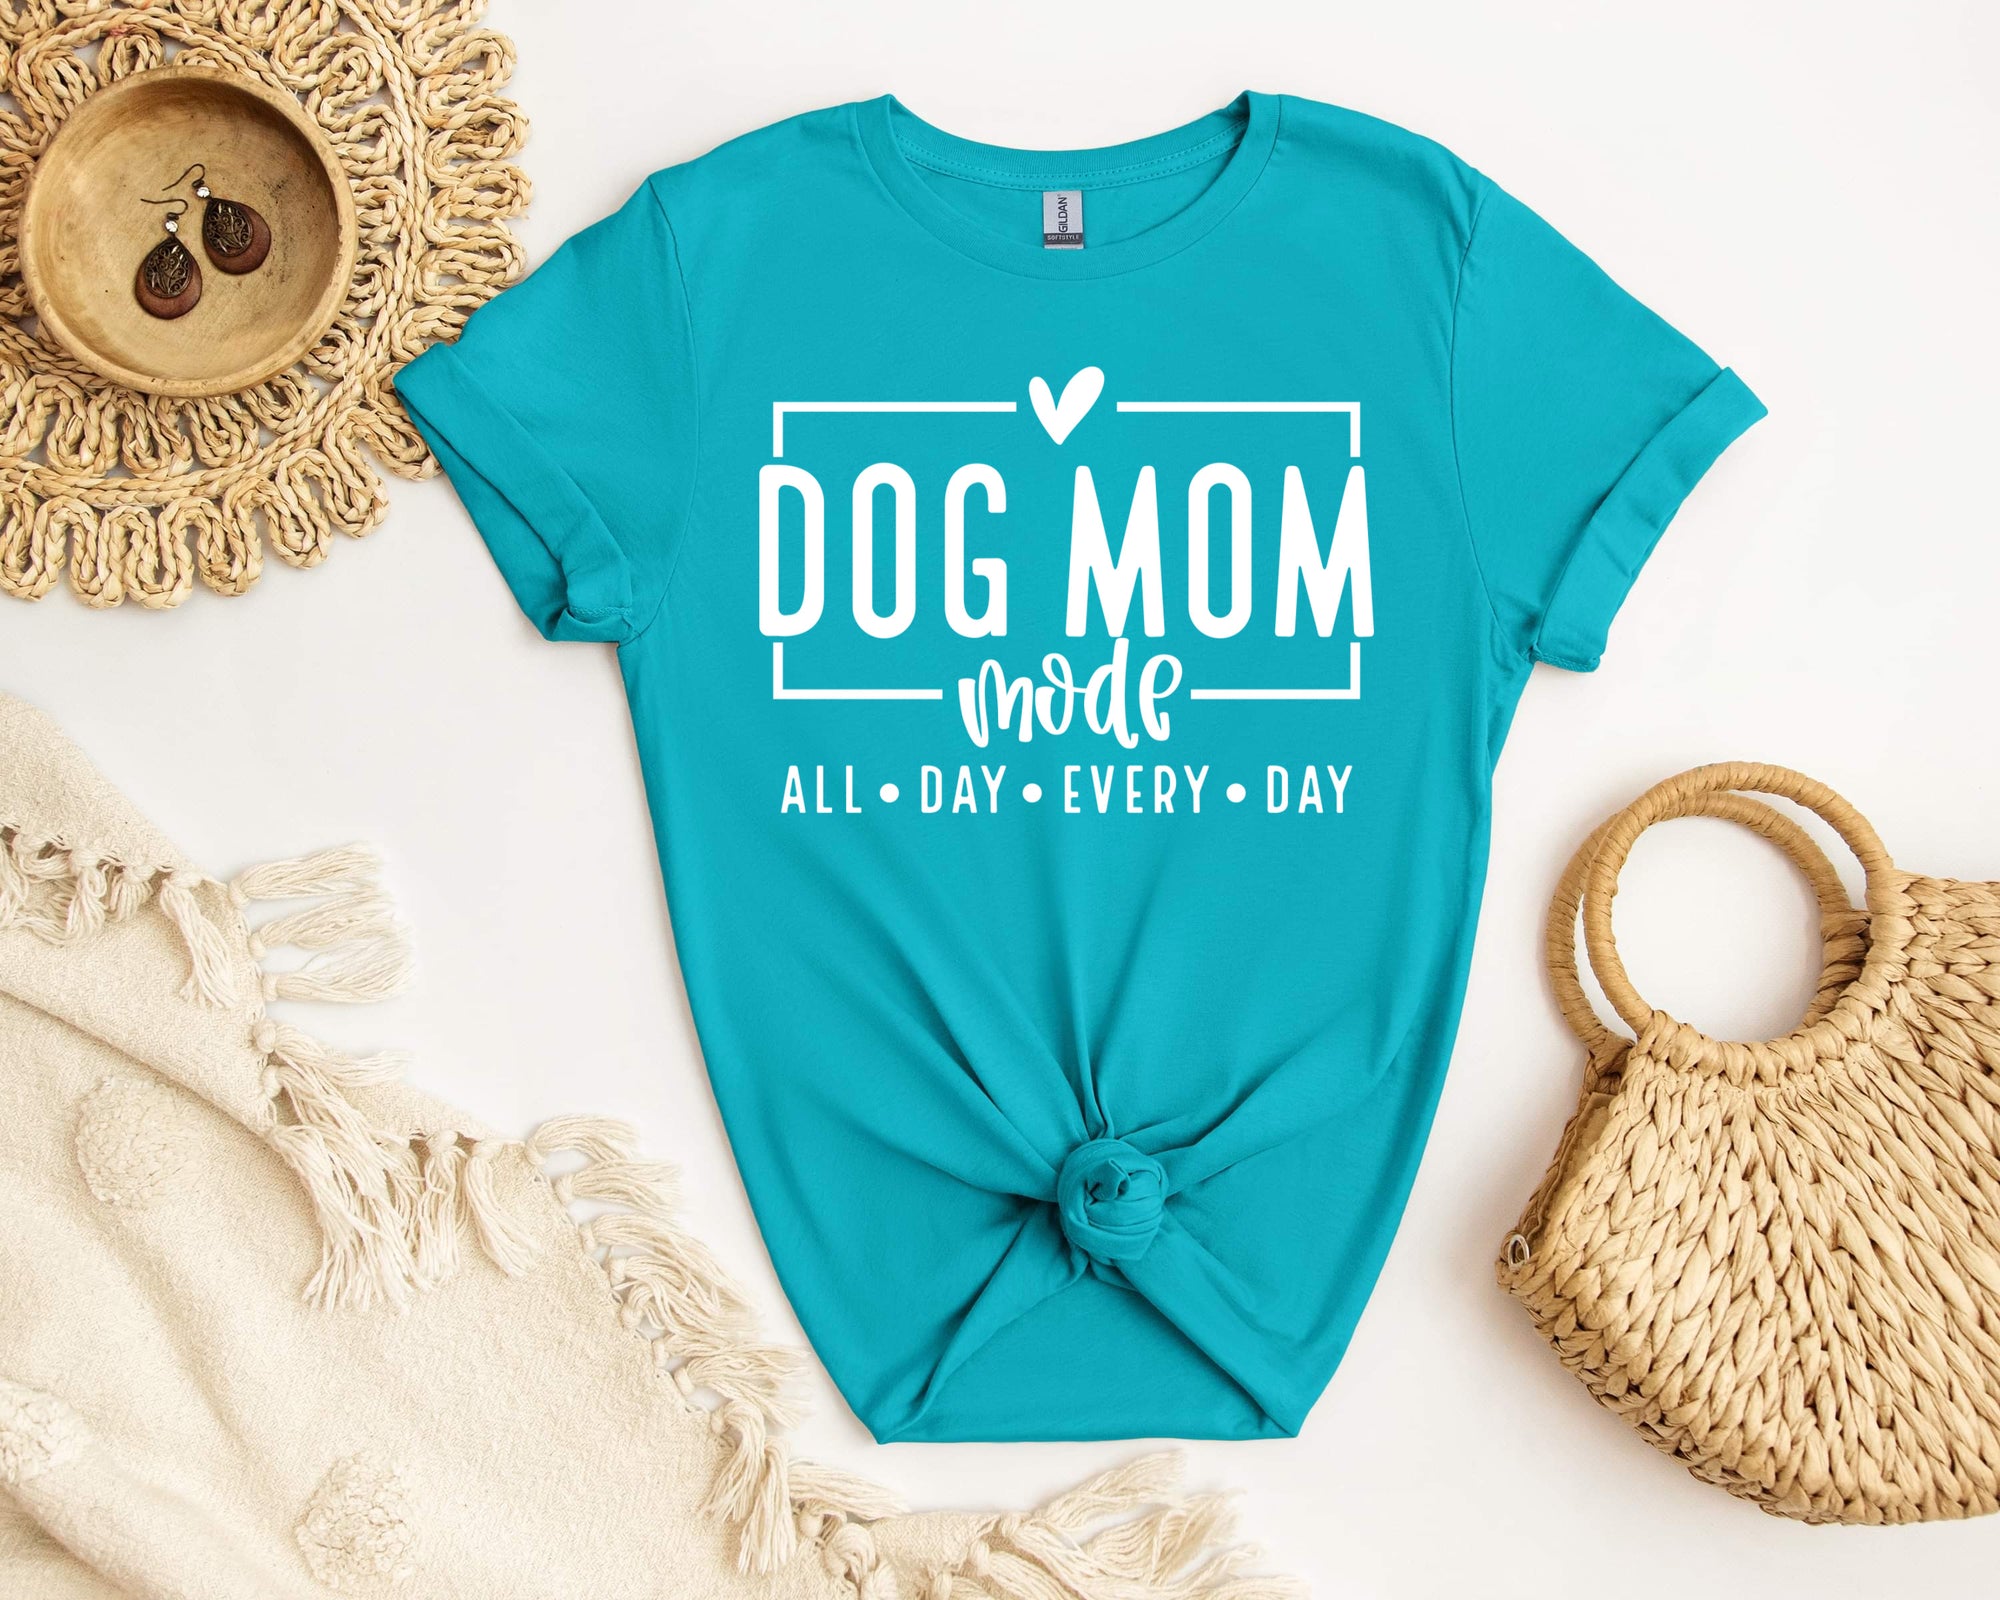 DOG MOM MODE shirt